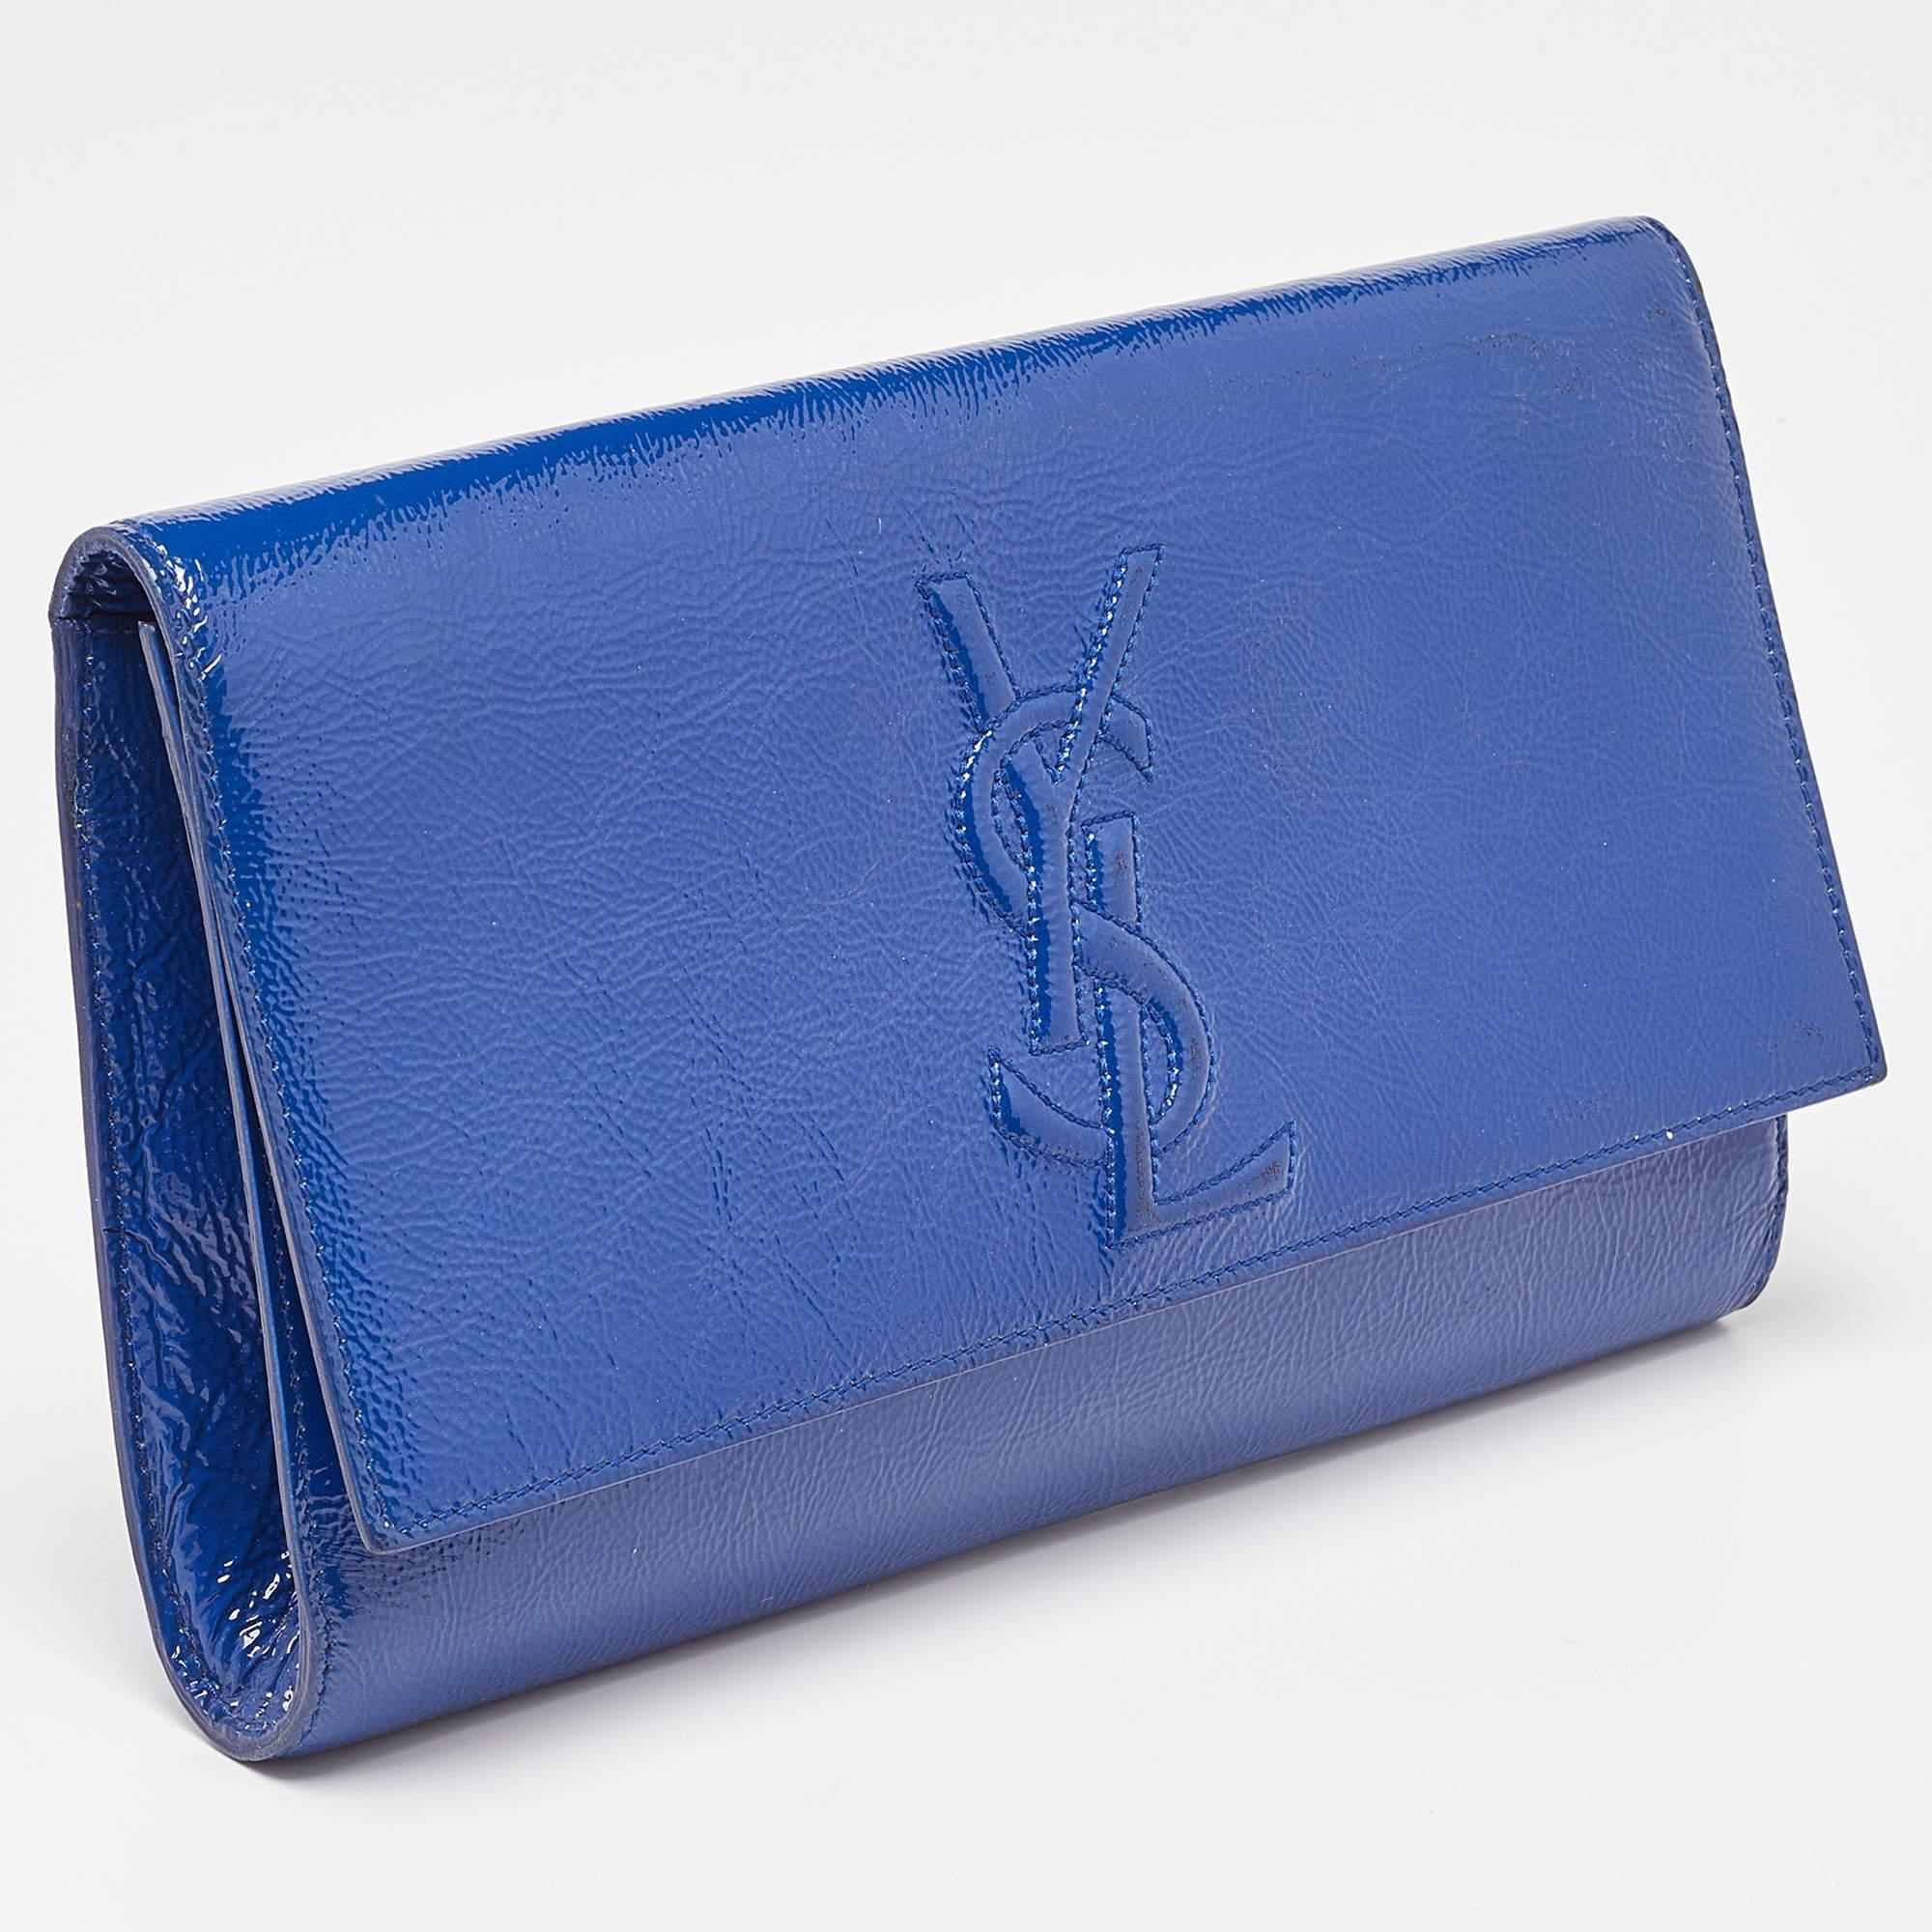 Yves Saint Laurent Blue Patent Leather Belle De Jour Flap Clutch For Sale 8